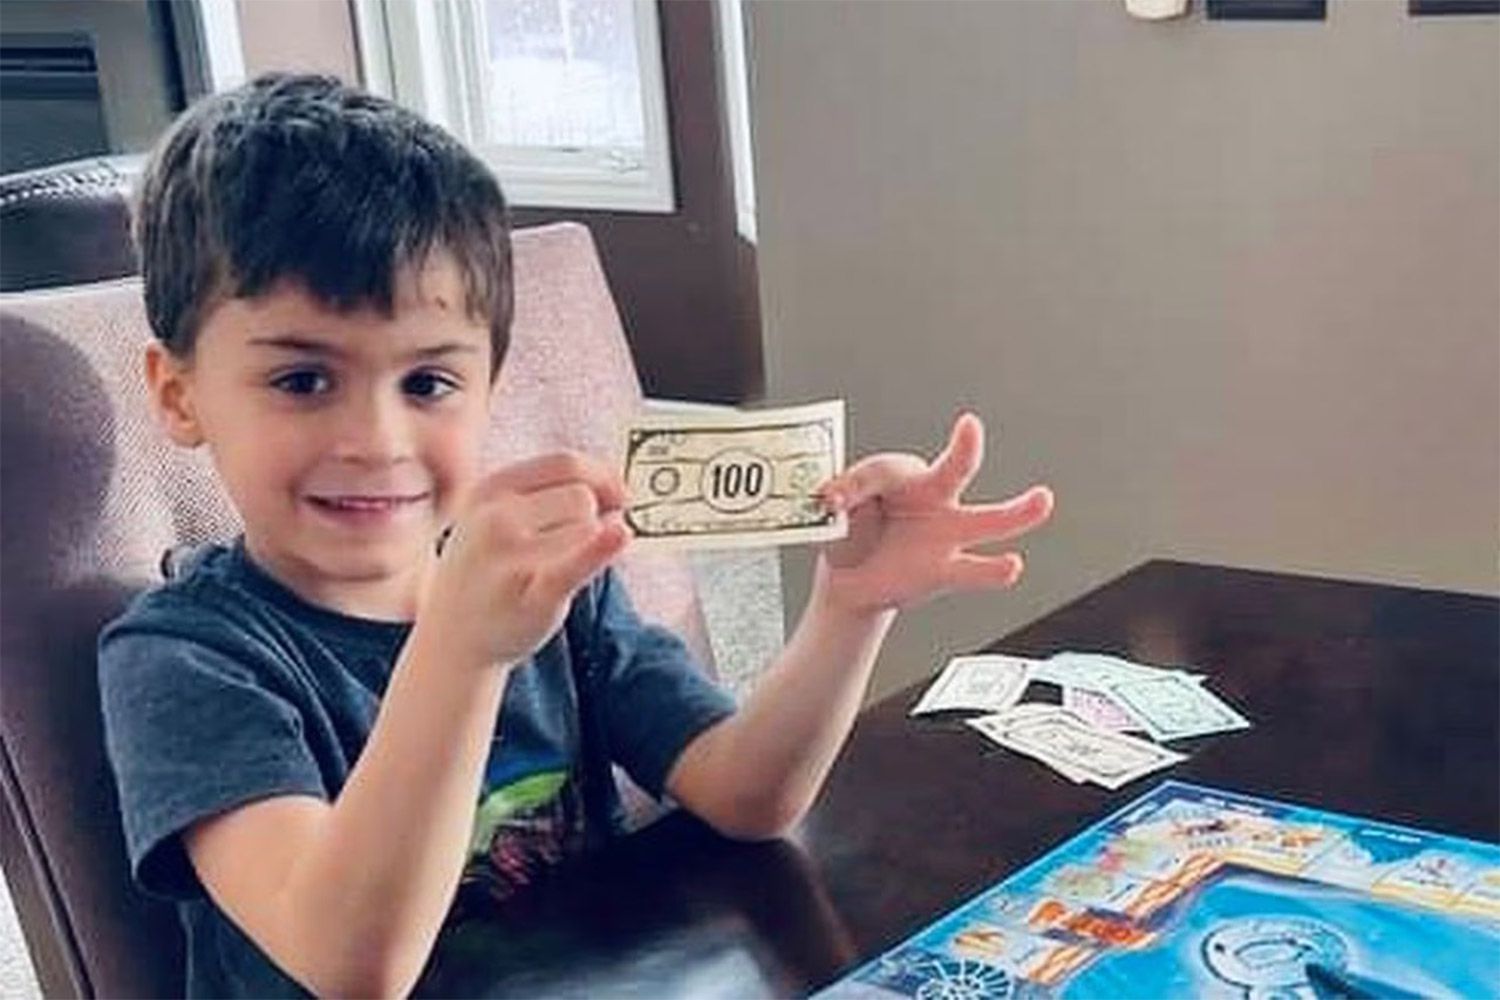 6 歳のミシガン州の少年が父親の携帯電話を使って Grubhub で 1,000 ドル相当の食品を注文